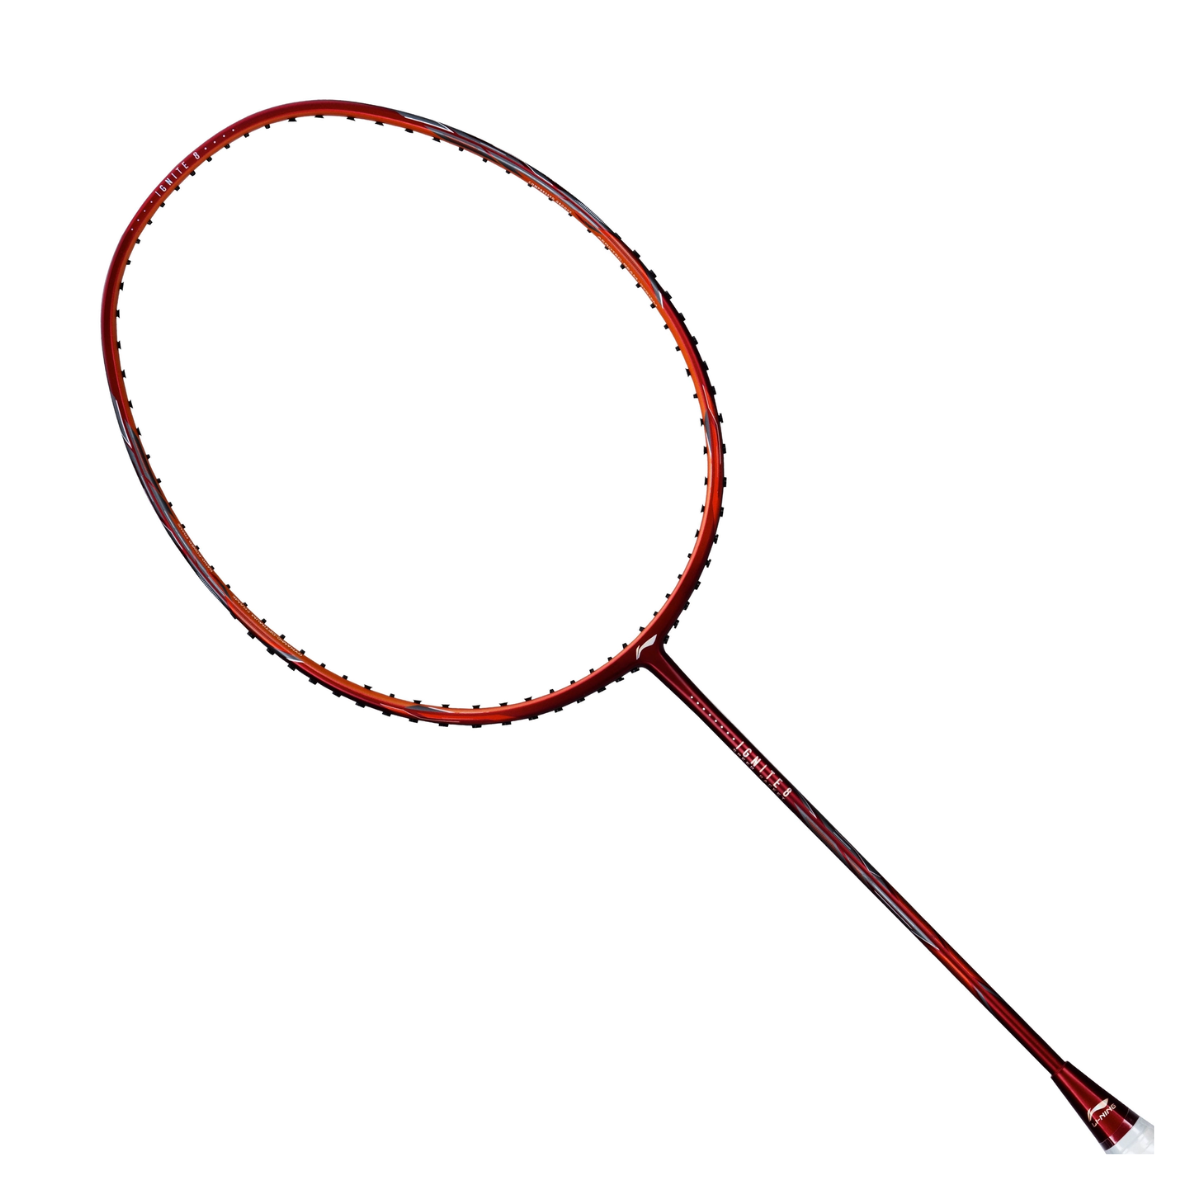 Li-Ning Ignite 8 Strung Badminton Racket